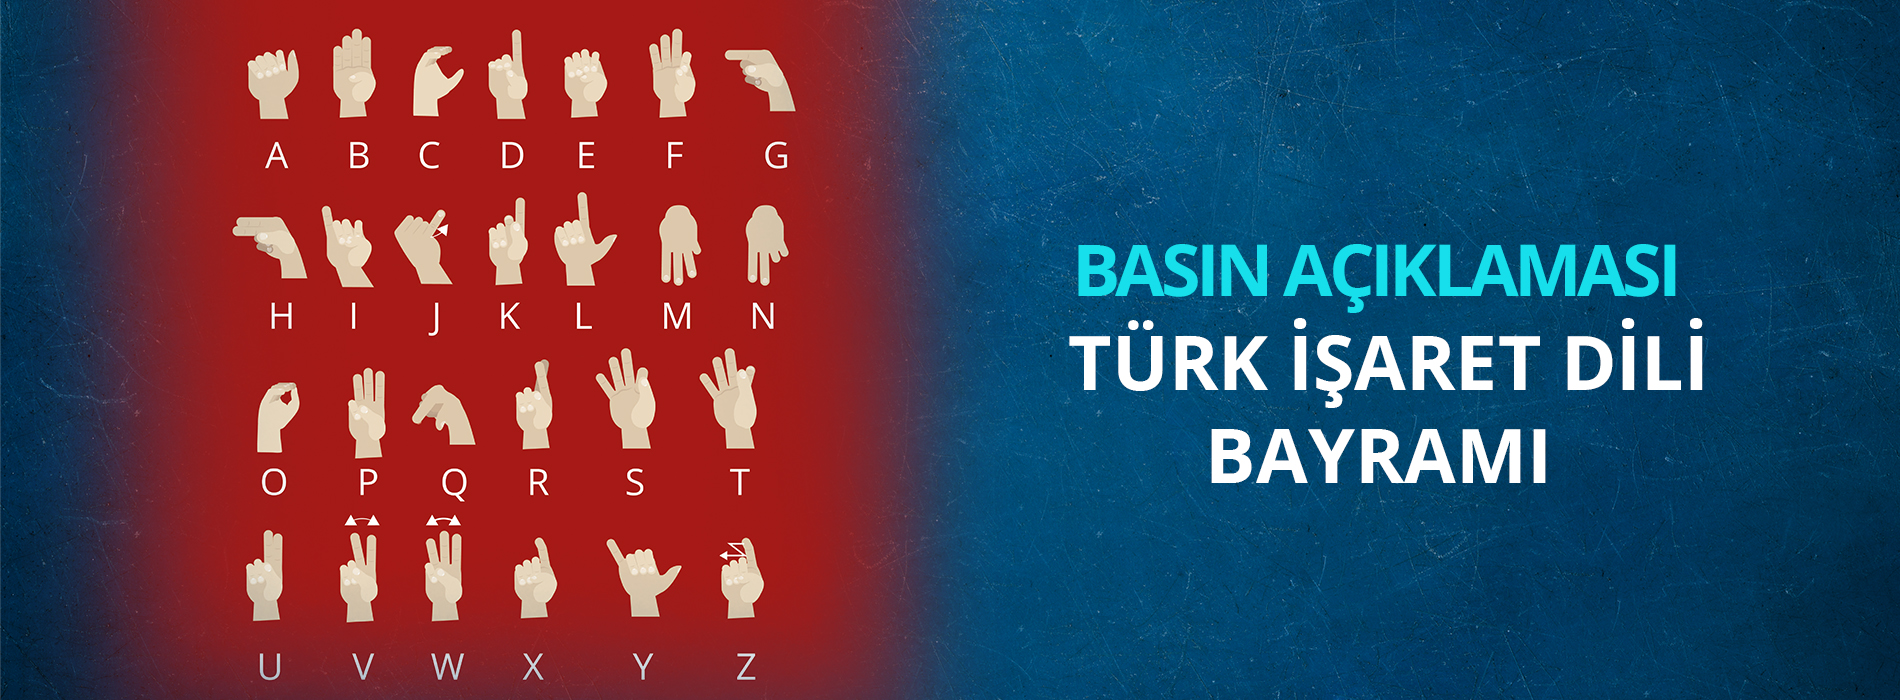 Türk İşaret Dili Bayramı  Basın Açıklaması